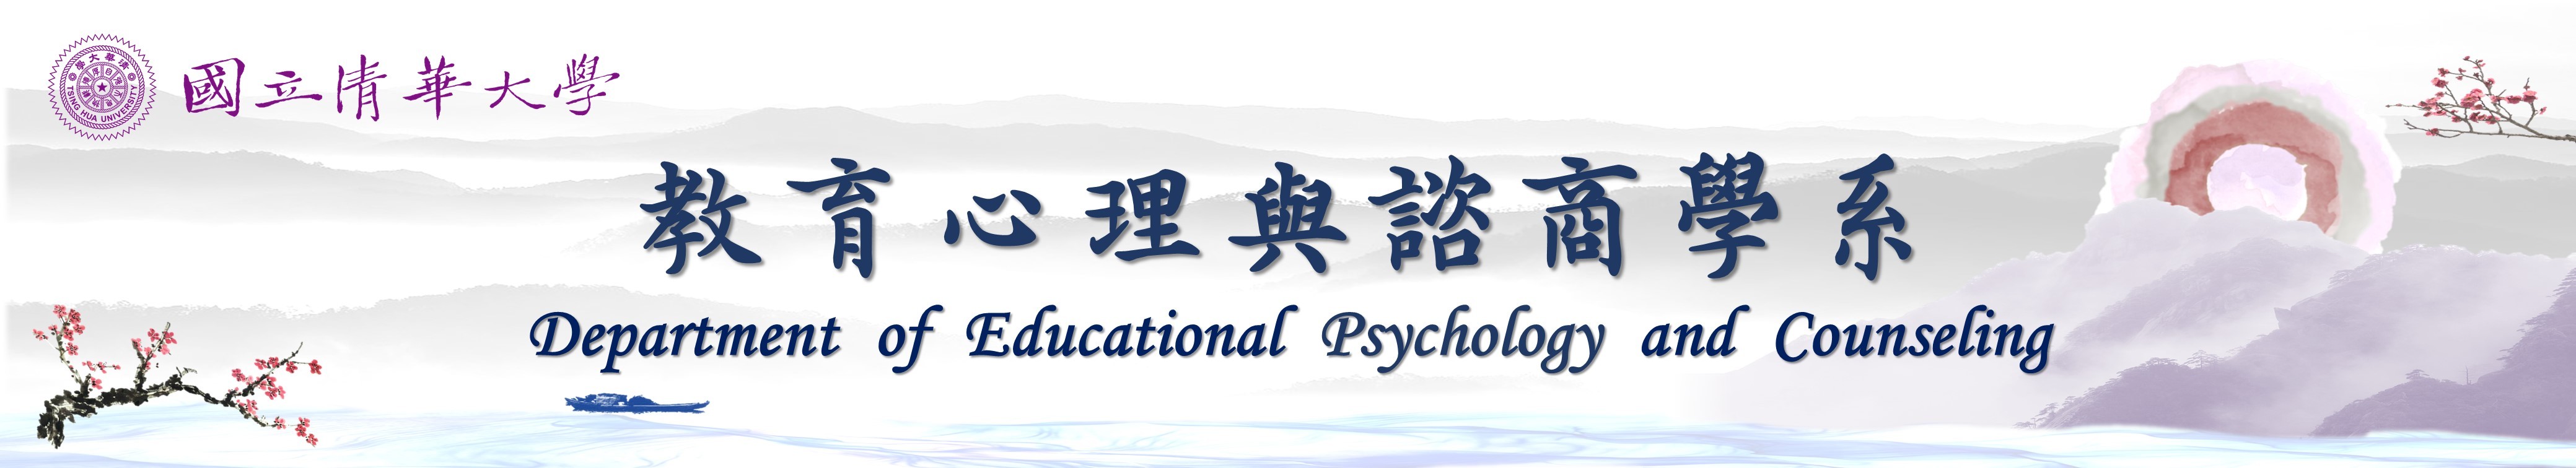 國立清華大學教育心理與諮商學系